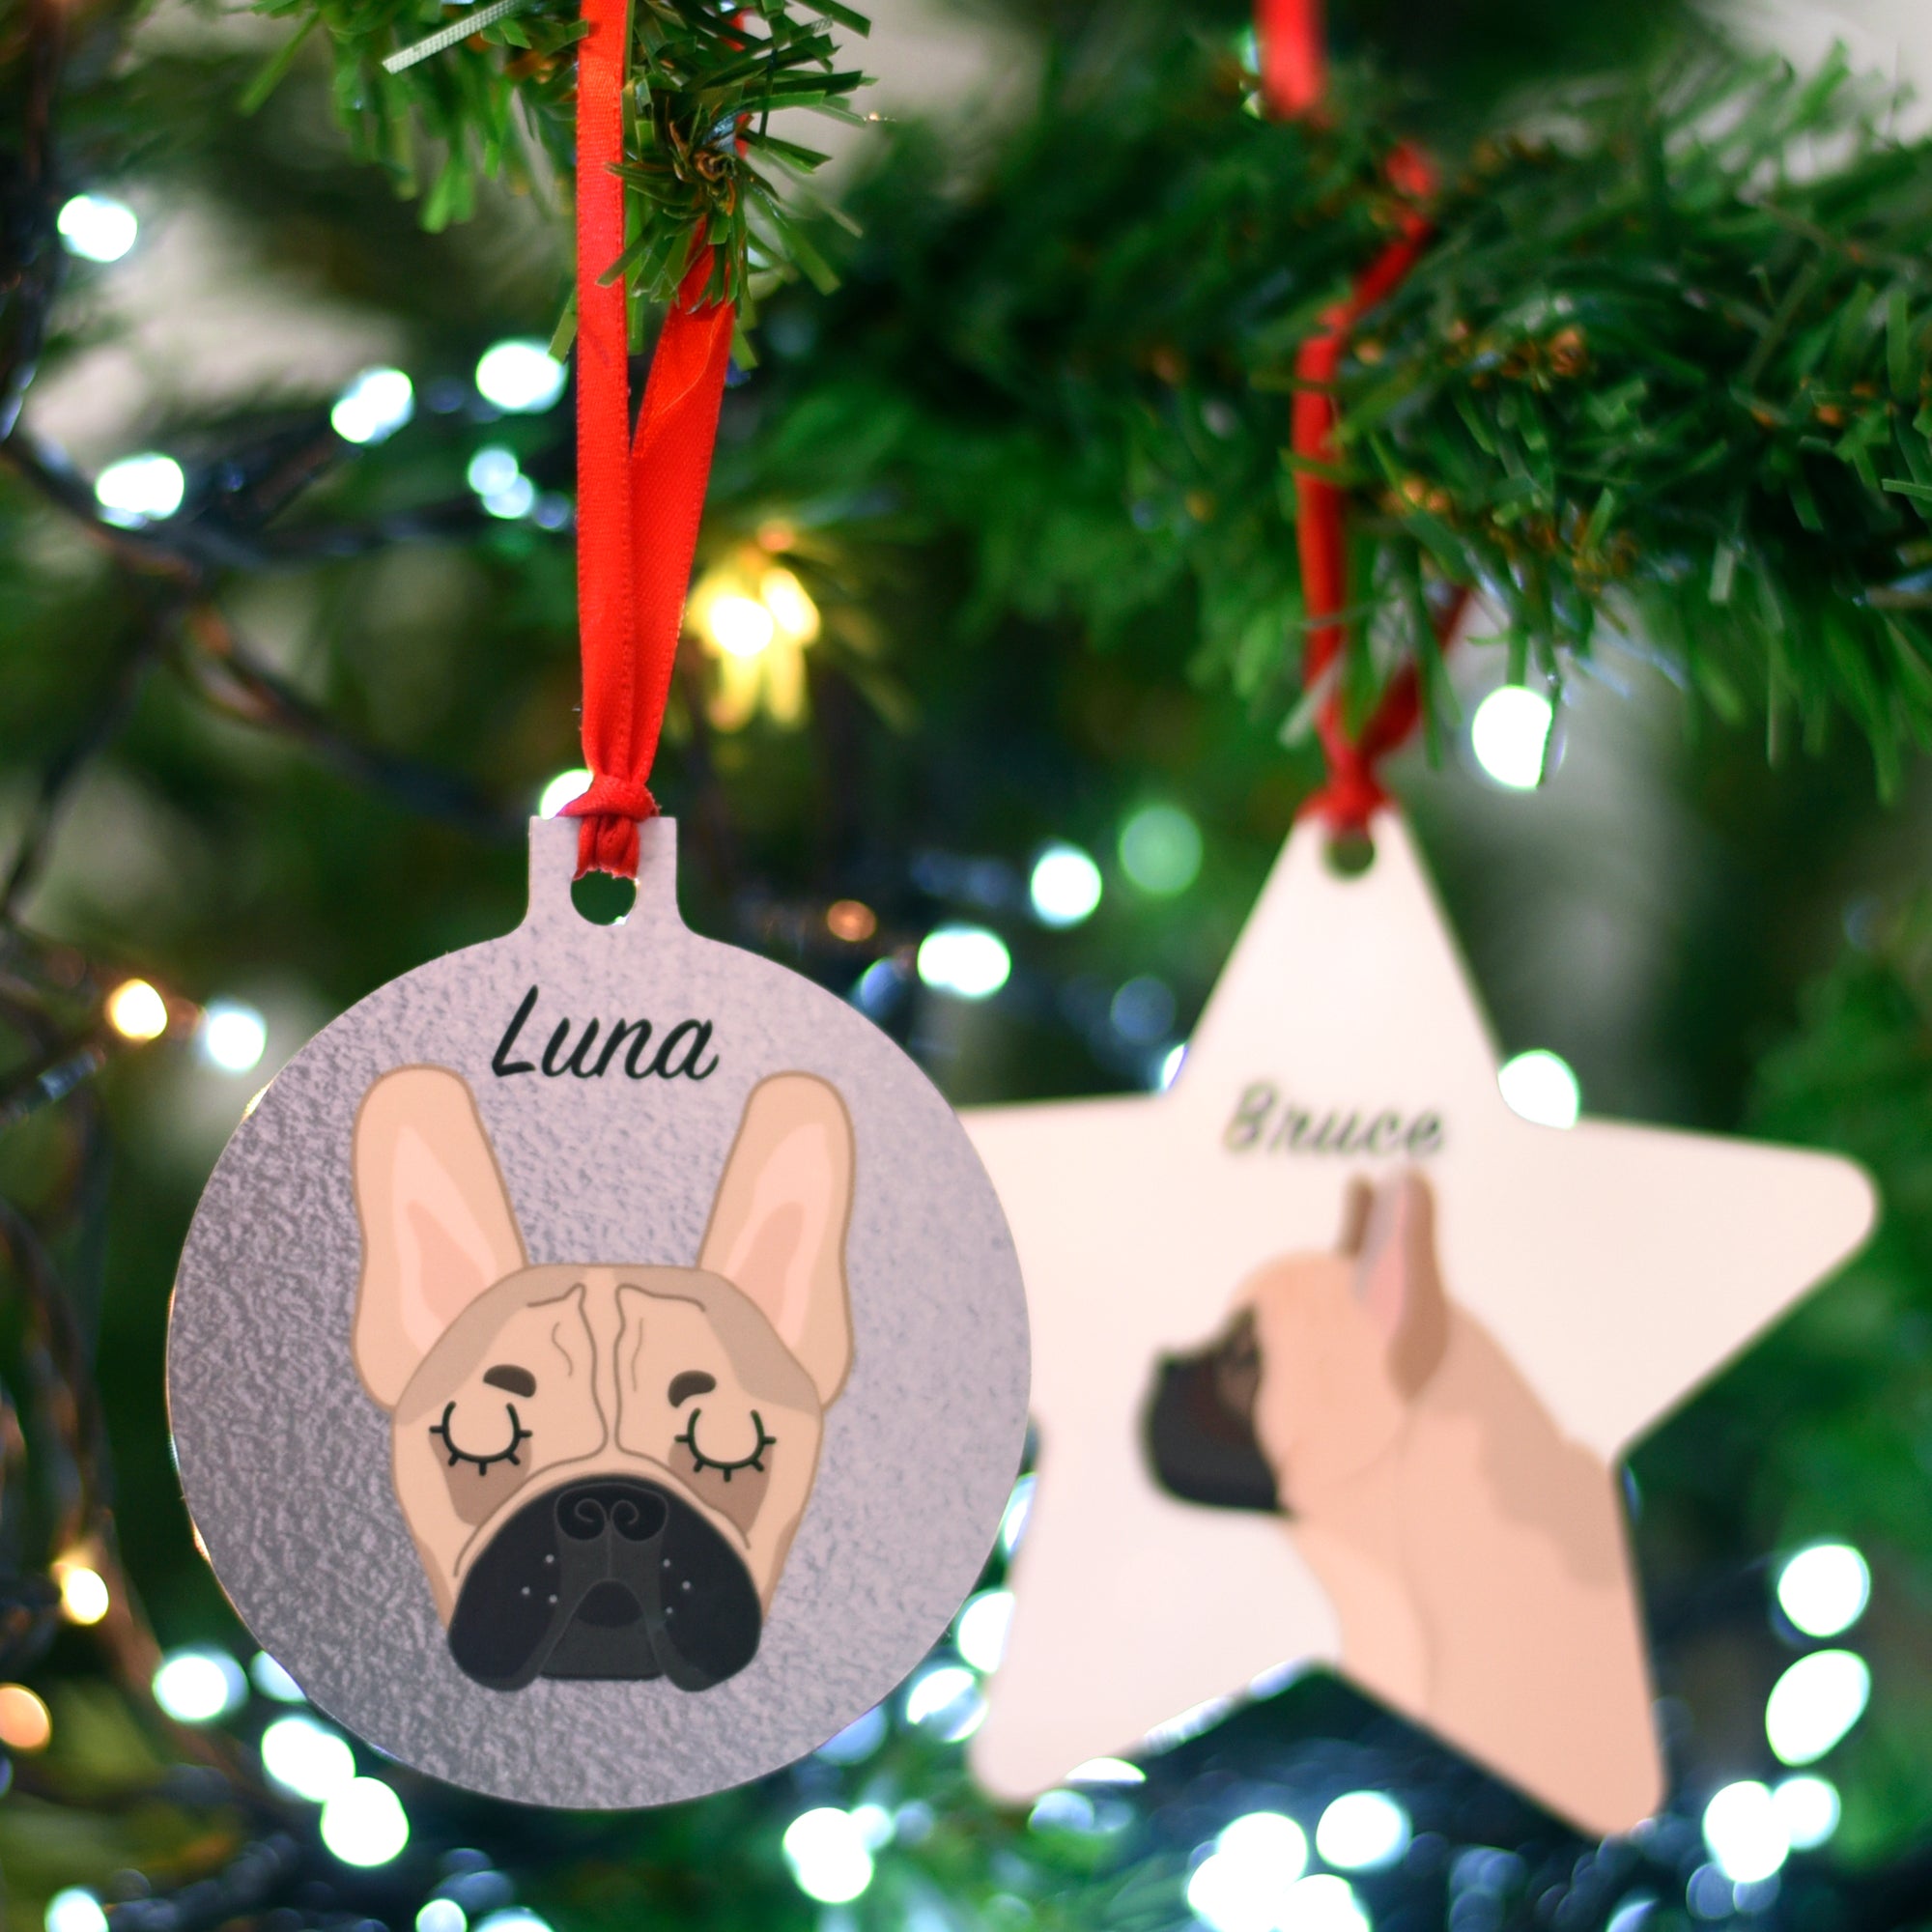 French Bulldog Personalised Dog Christmas Decoration